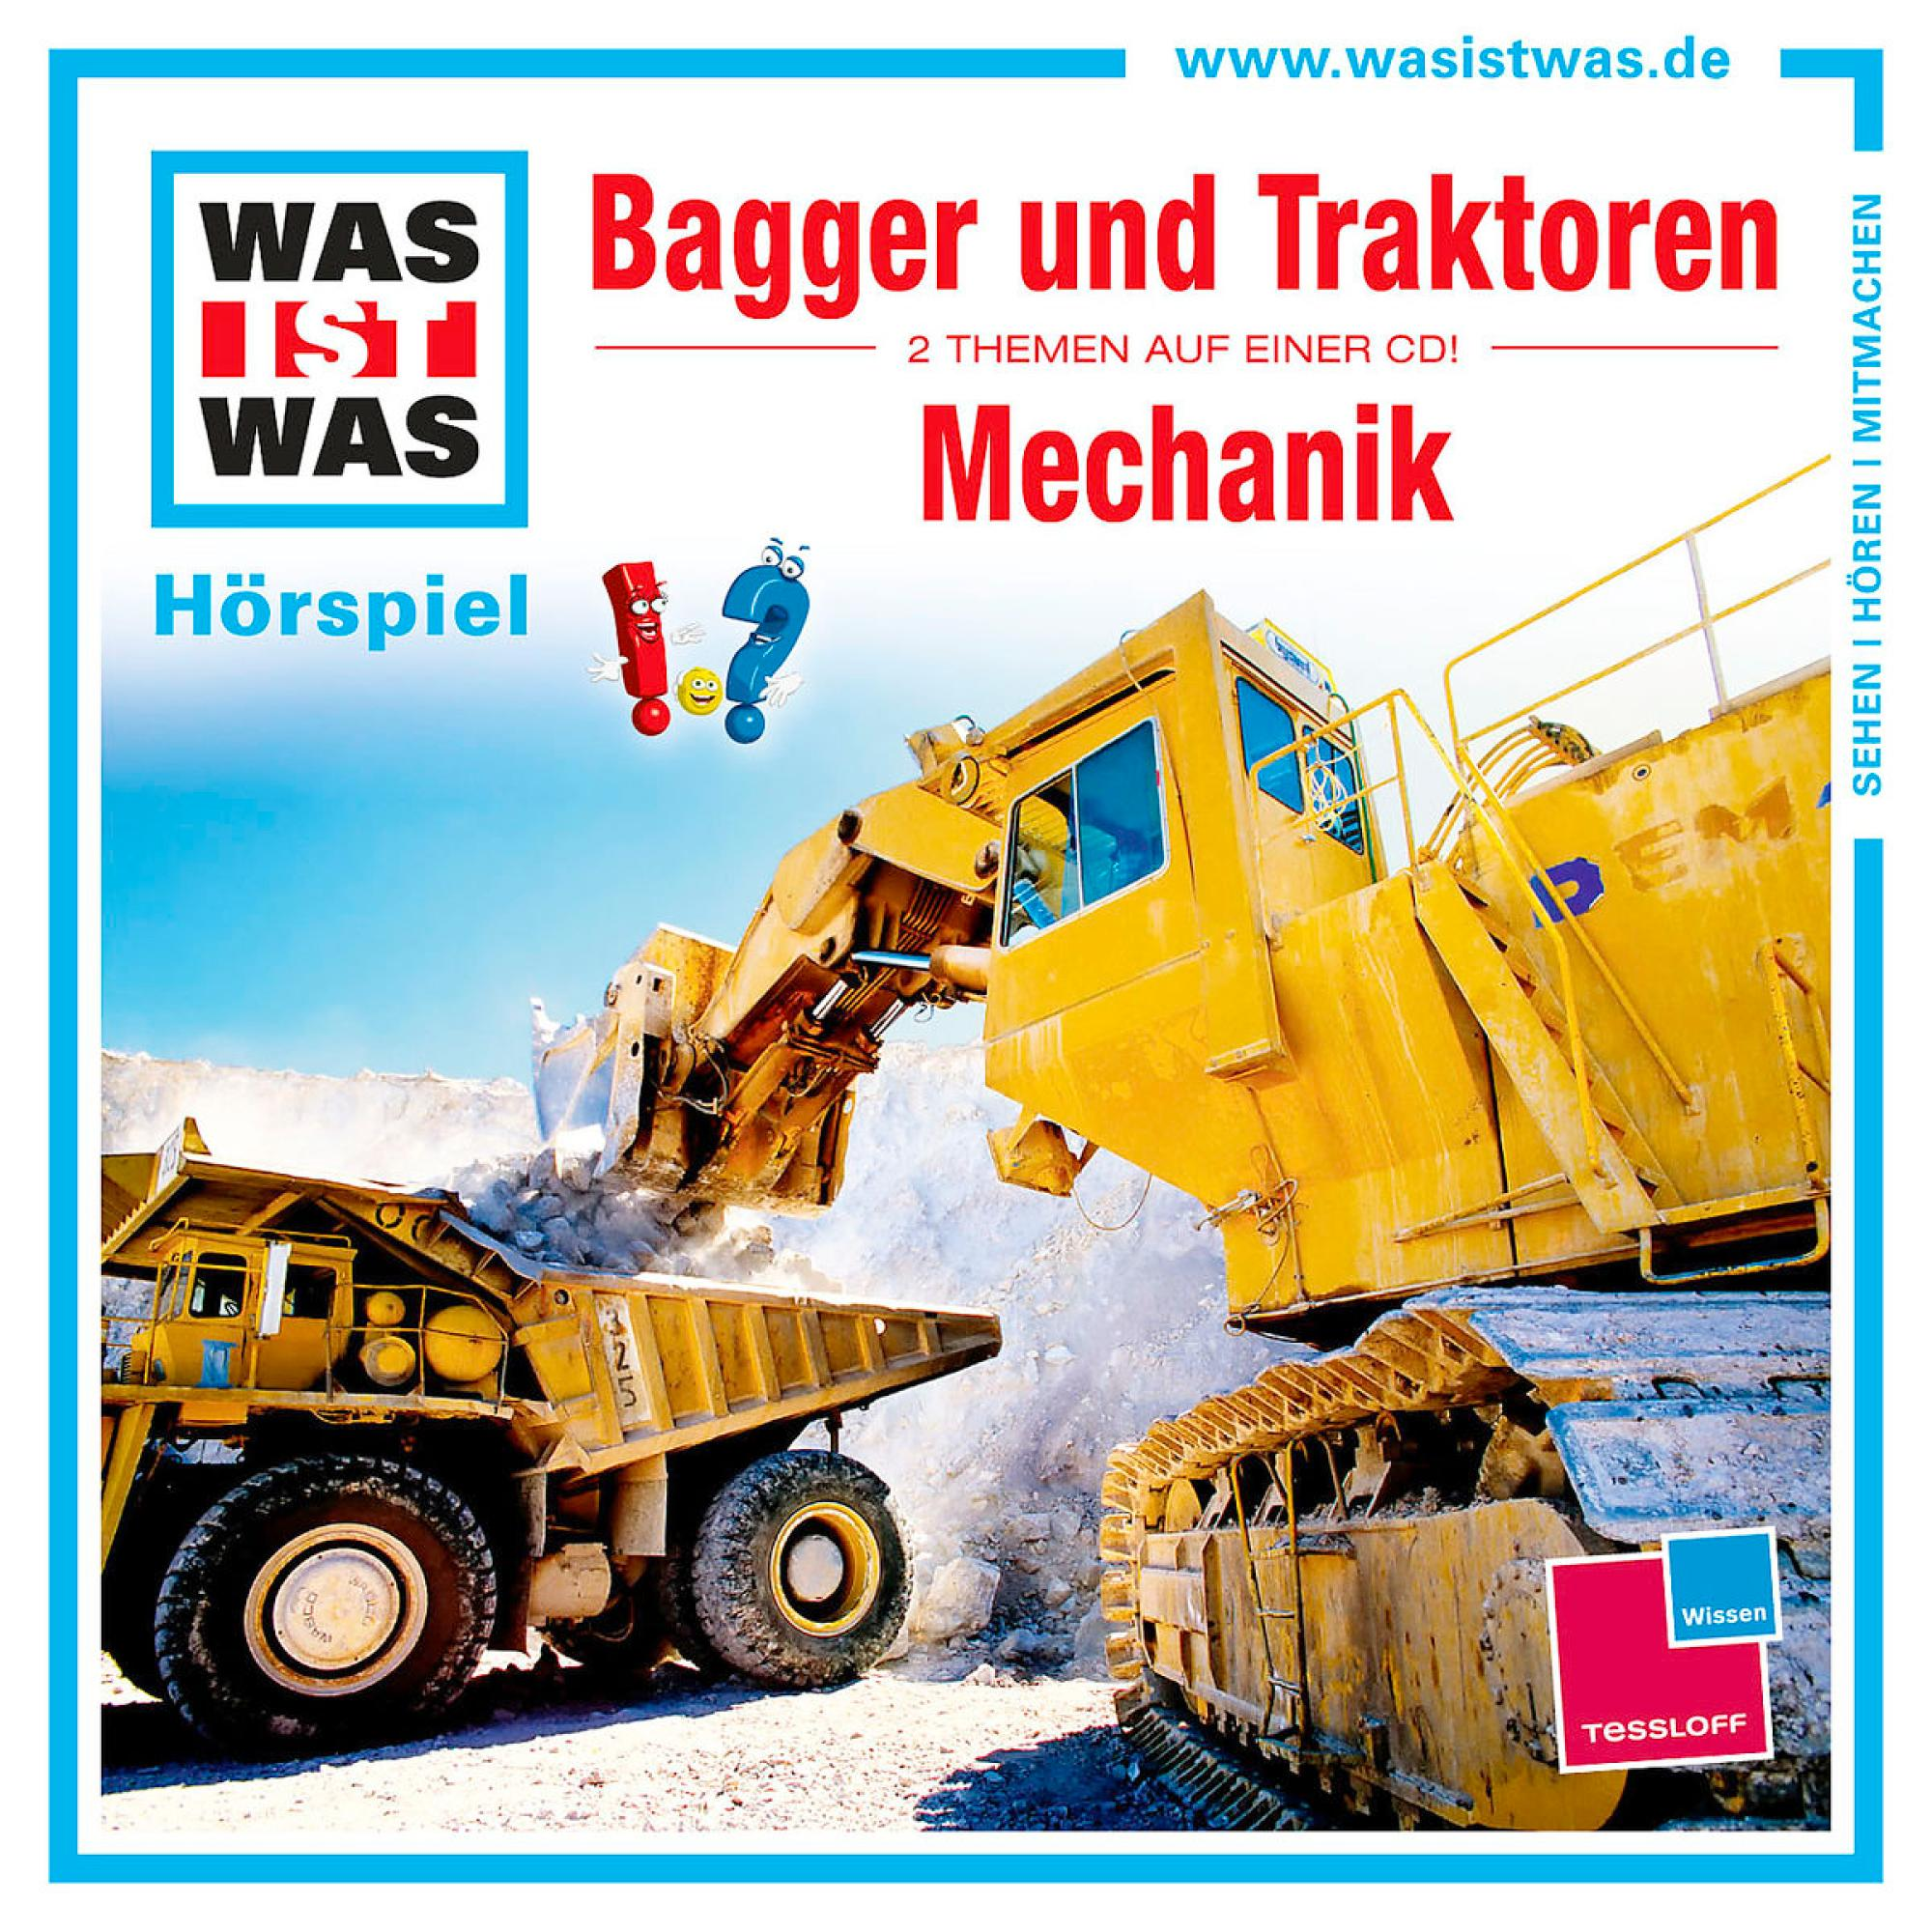 WAS IST WAS: Bagger und Mechanik (CD) Traktoren - 